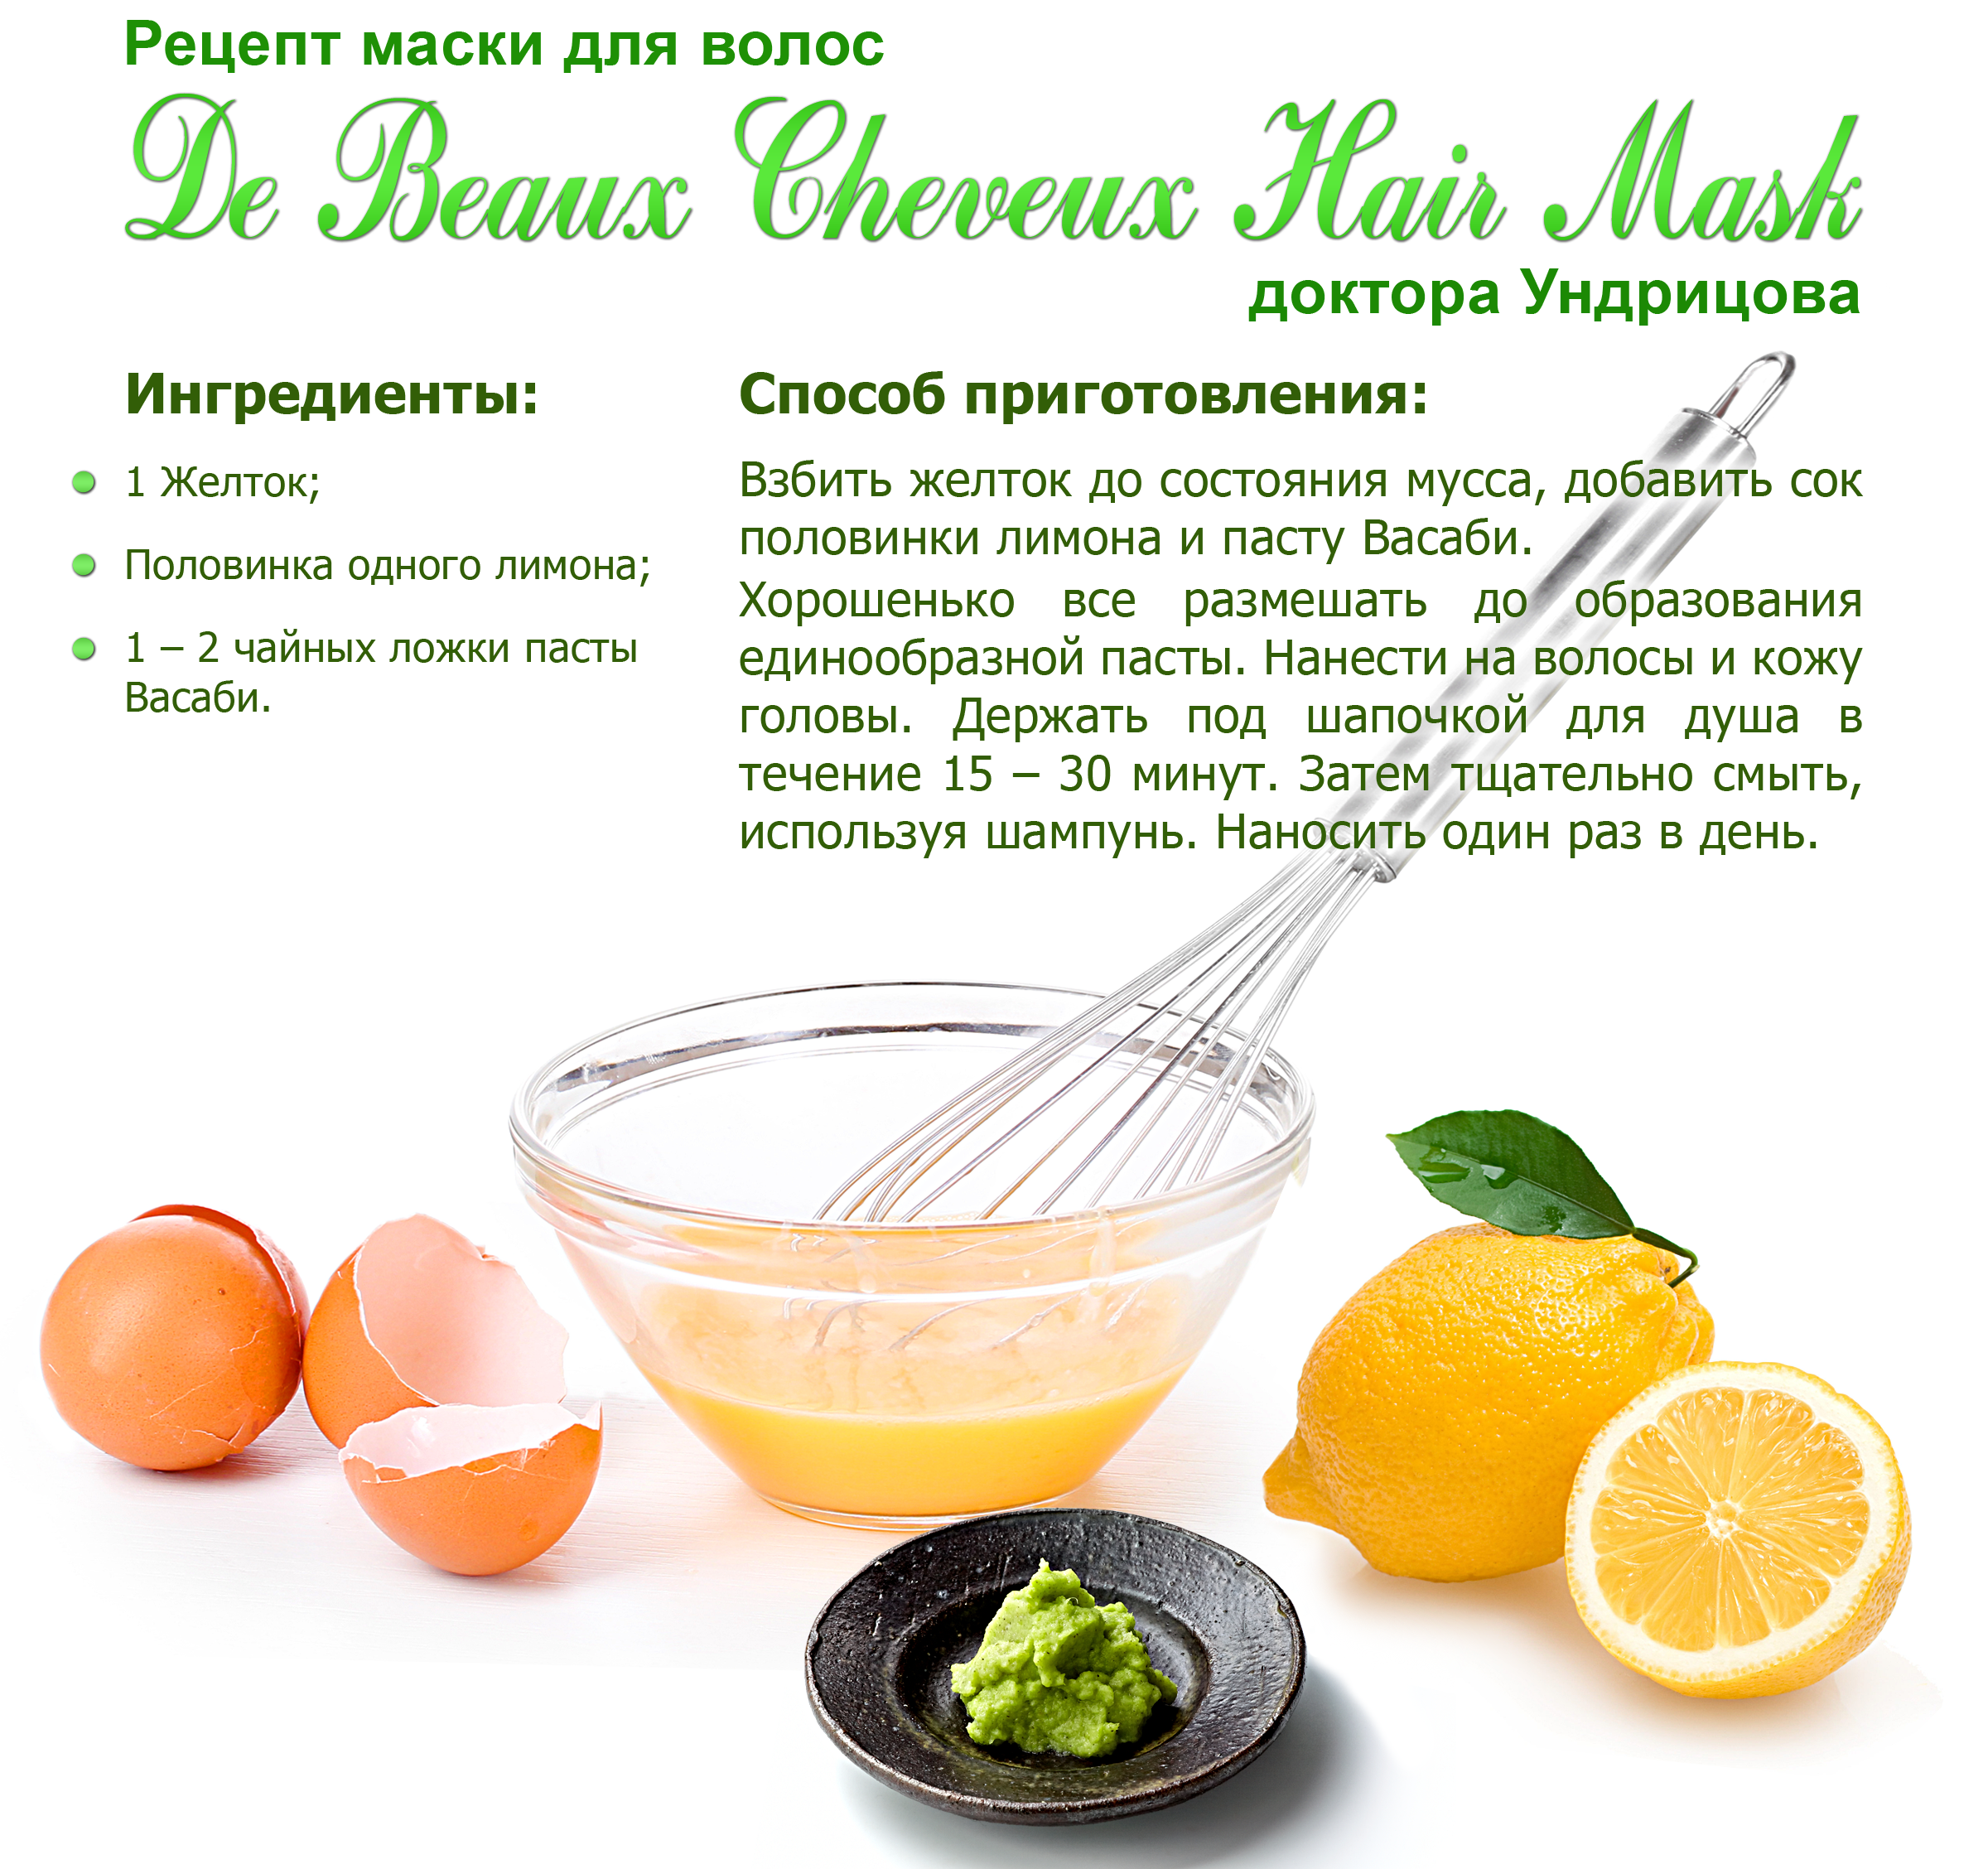 Луковая маска для волос против выпадения и для роста: рецепты в домашних условиях